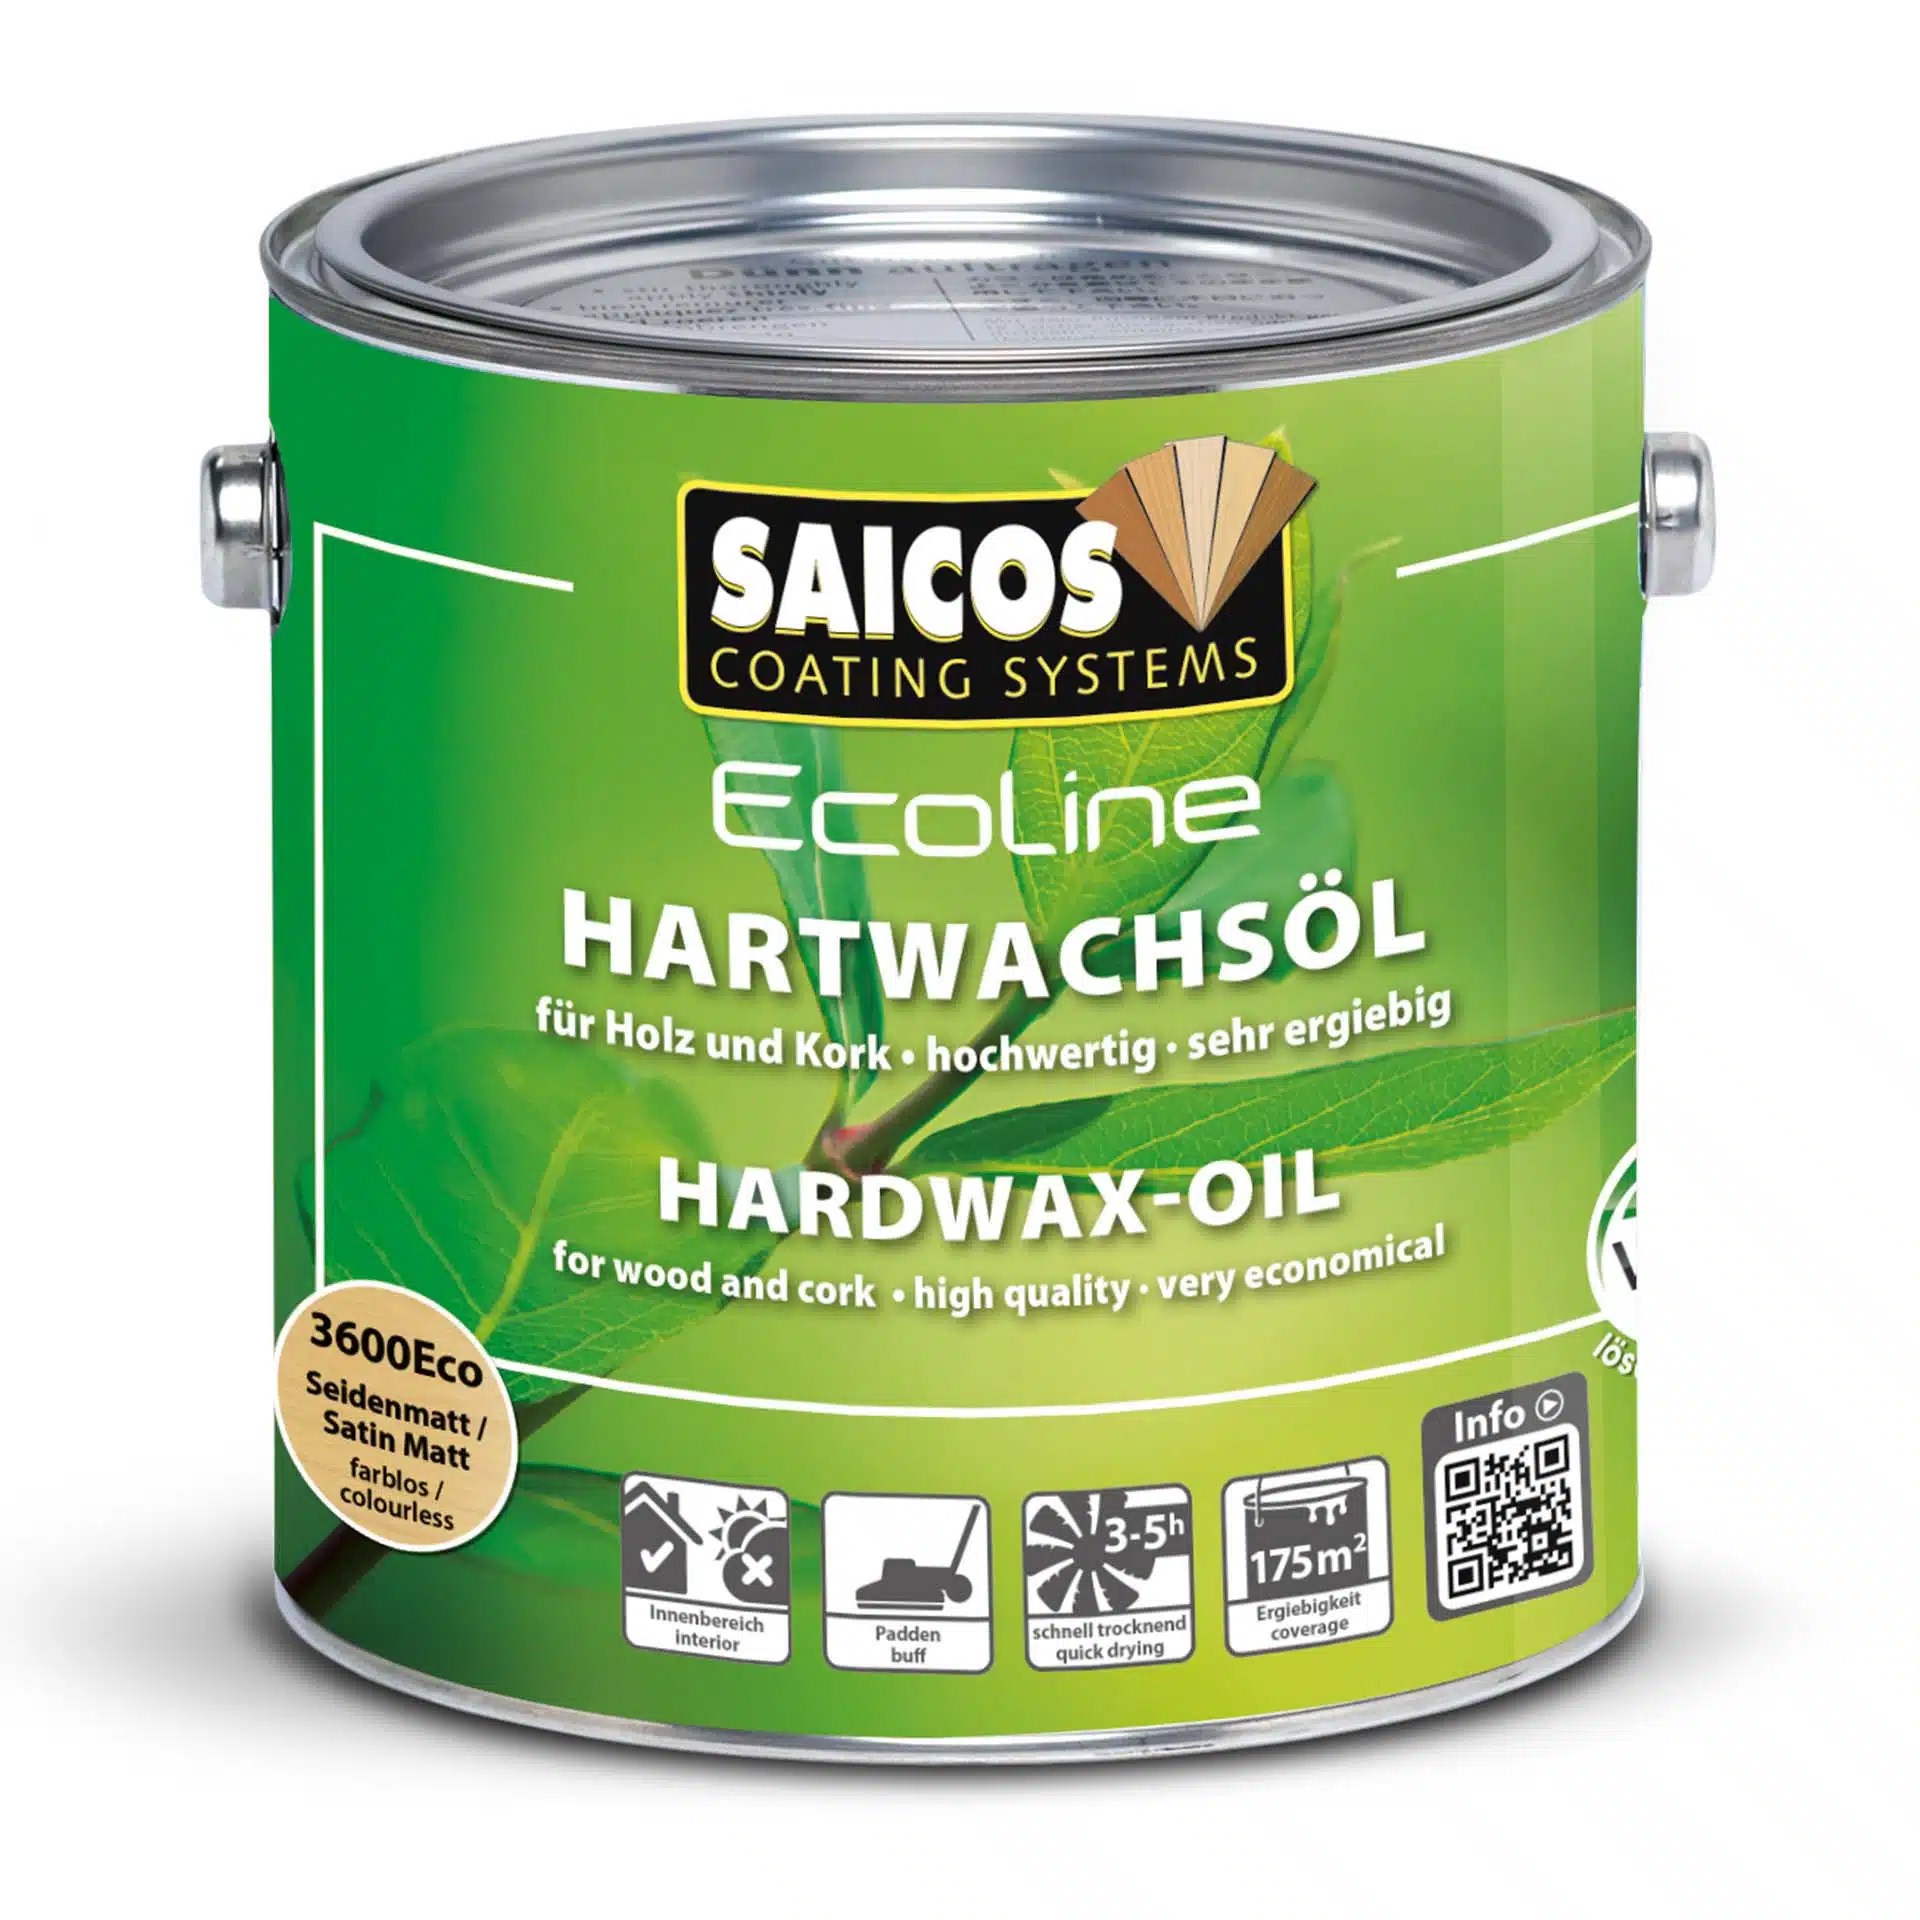 Afbeelding van Saicos Ecoline Hardwax olie Blank zijdemat (3600 ECO) 0,75L